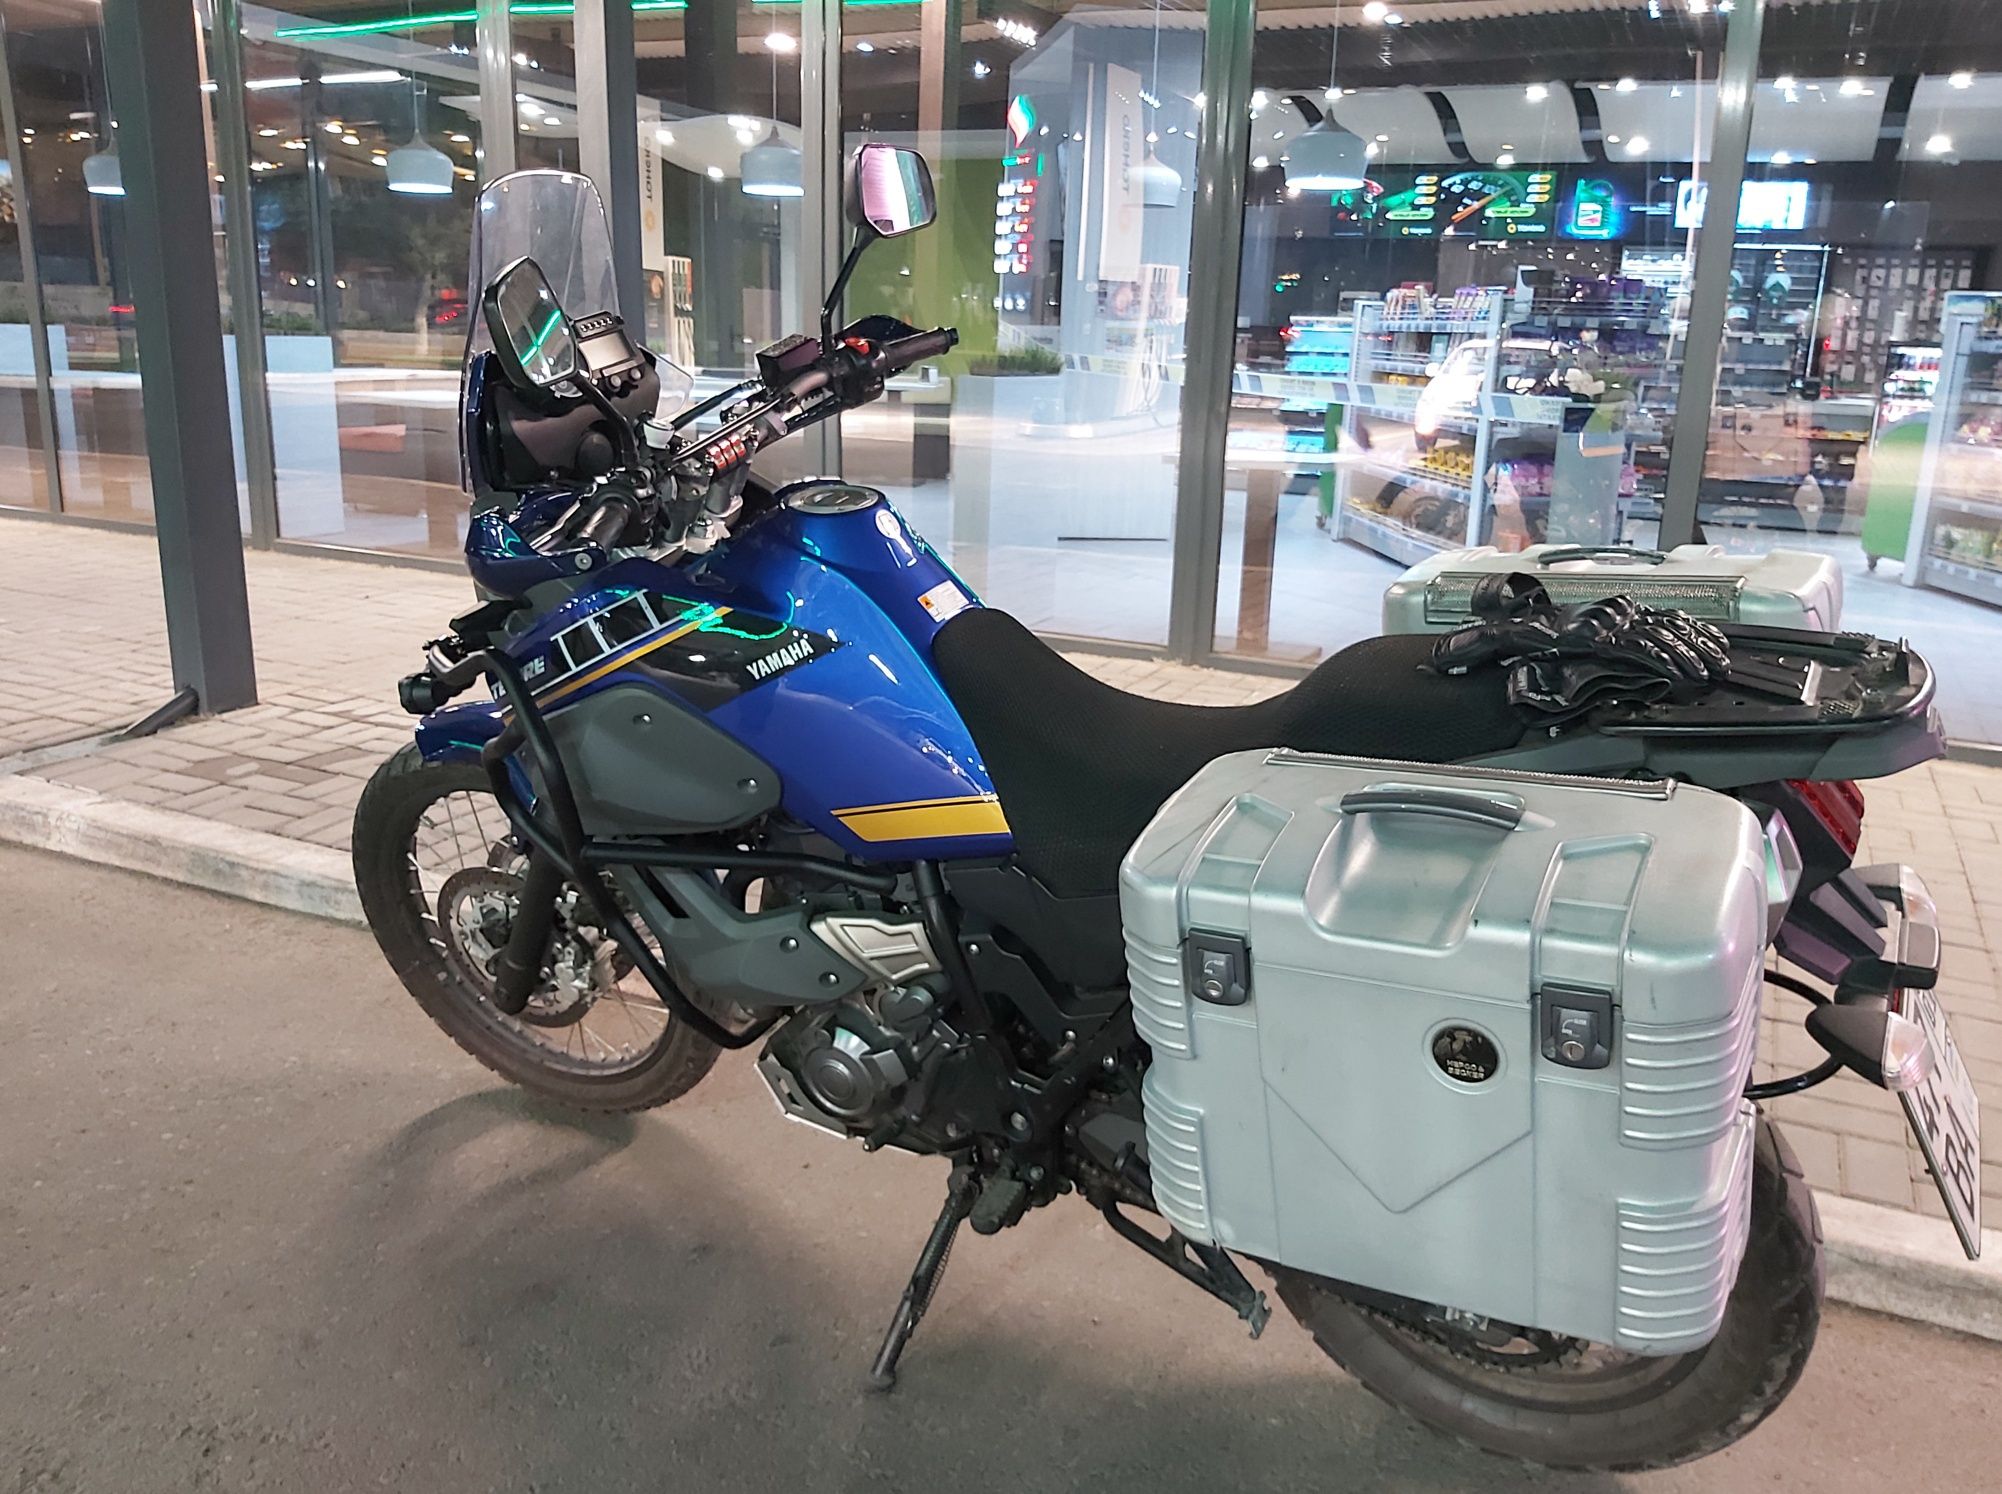 Yamaha XT660Z-Мотоцикл класса тур-эндуро